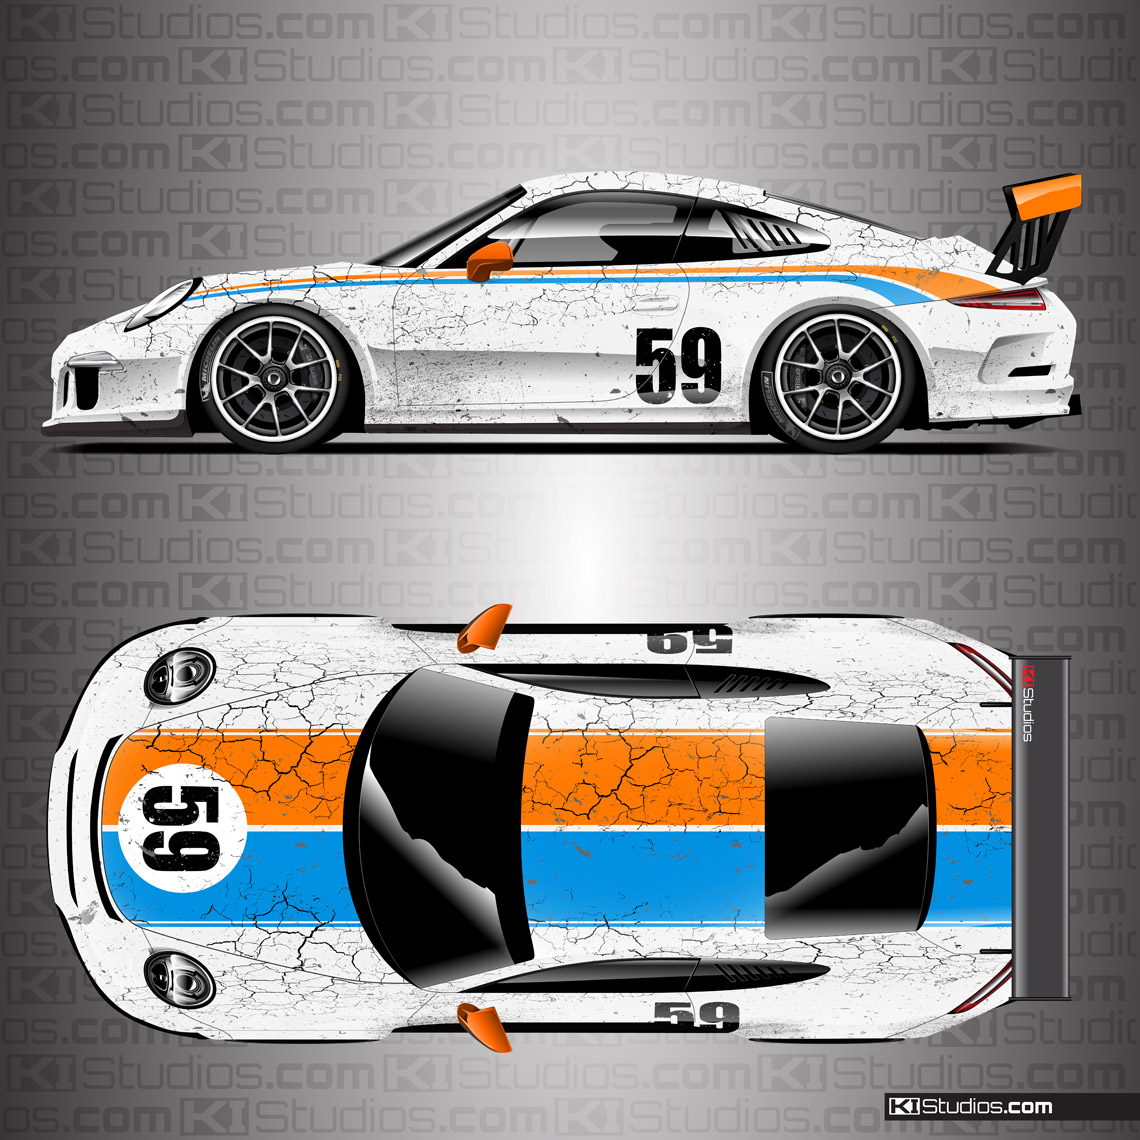 Porsche 991 GT3 Cup Car Livery by KI Studios - White, Orange, Blue